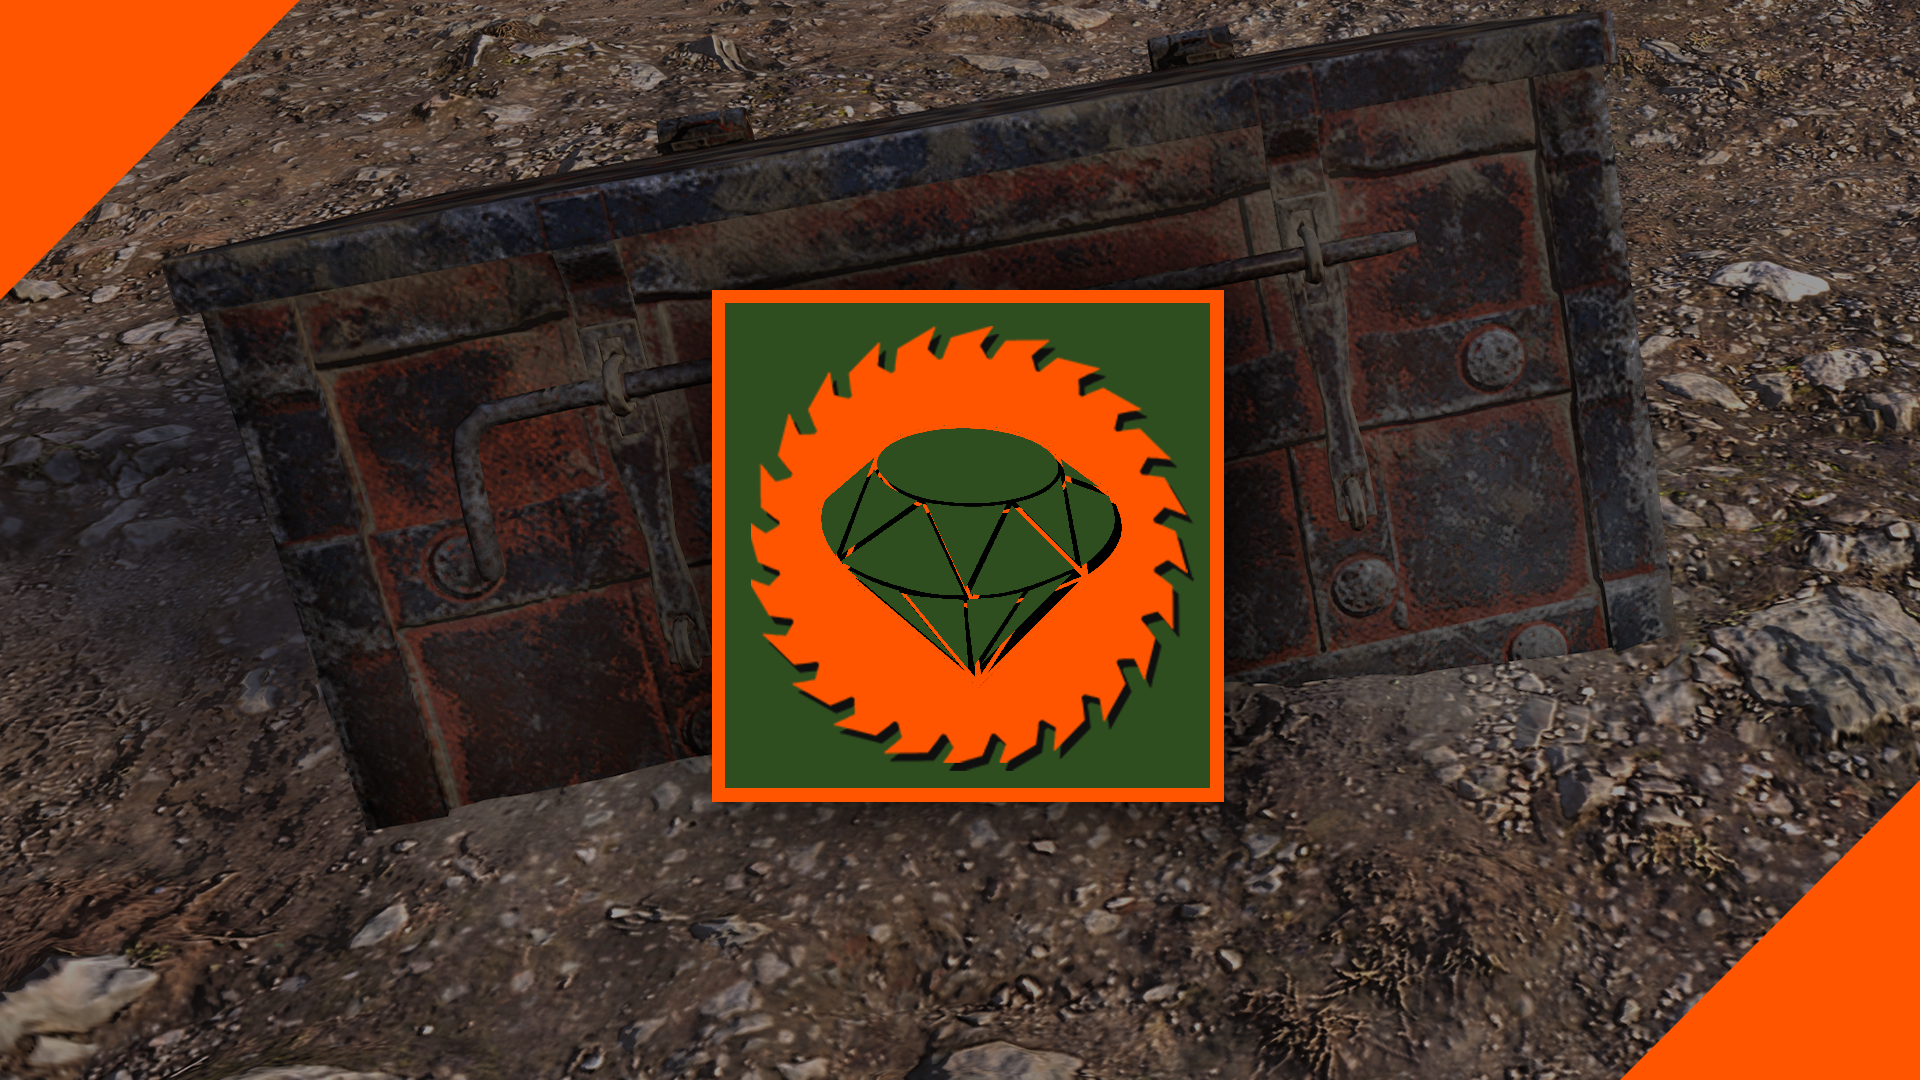 Icon for Treasure hunter